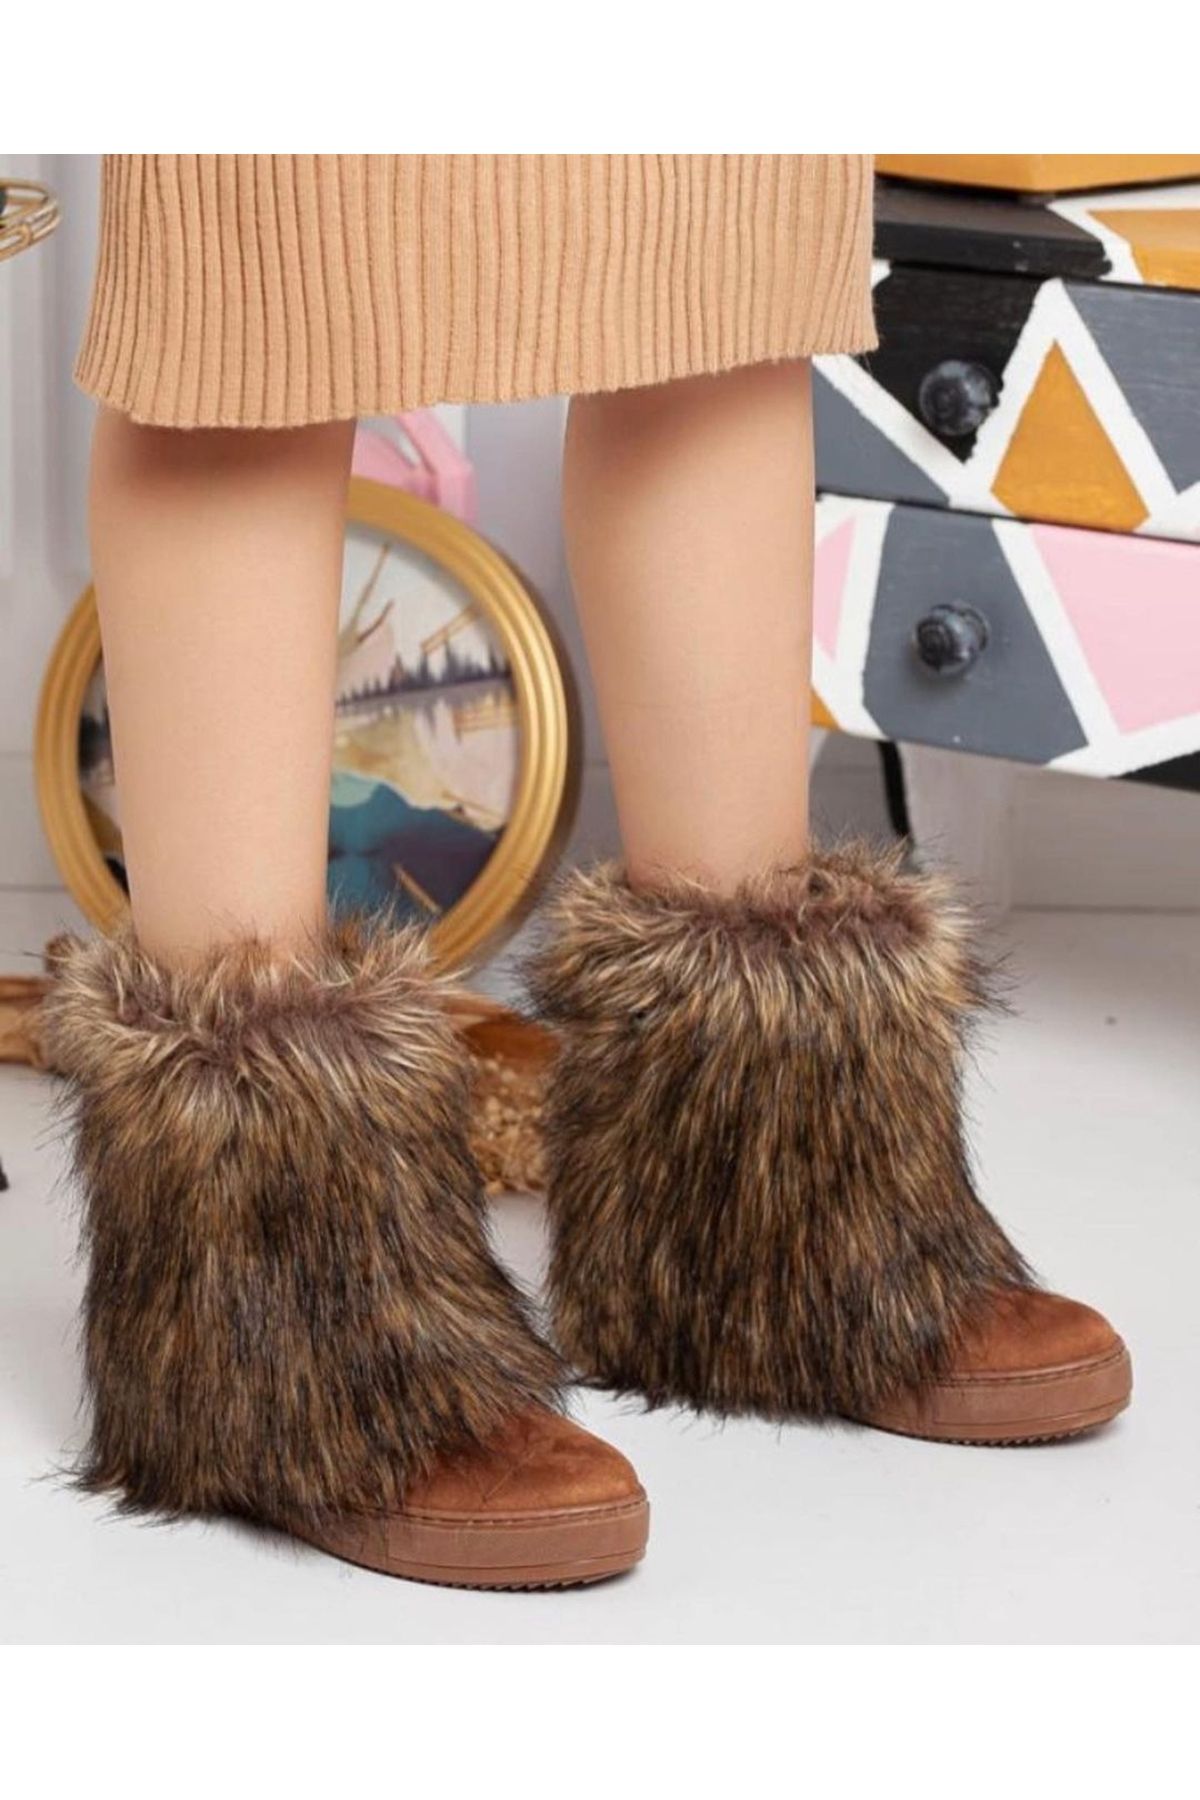 Afilli Kadın Kahve Taba Süet Tüylü Gizli İçten Topuk Bot Kalın Taban Postal Kaymaz Kışlık Ayakkabı